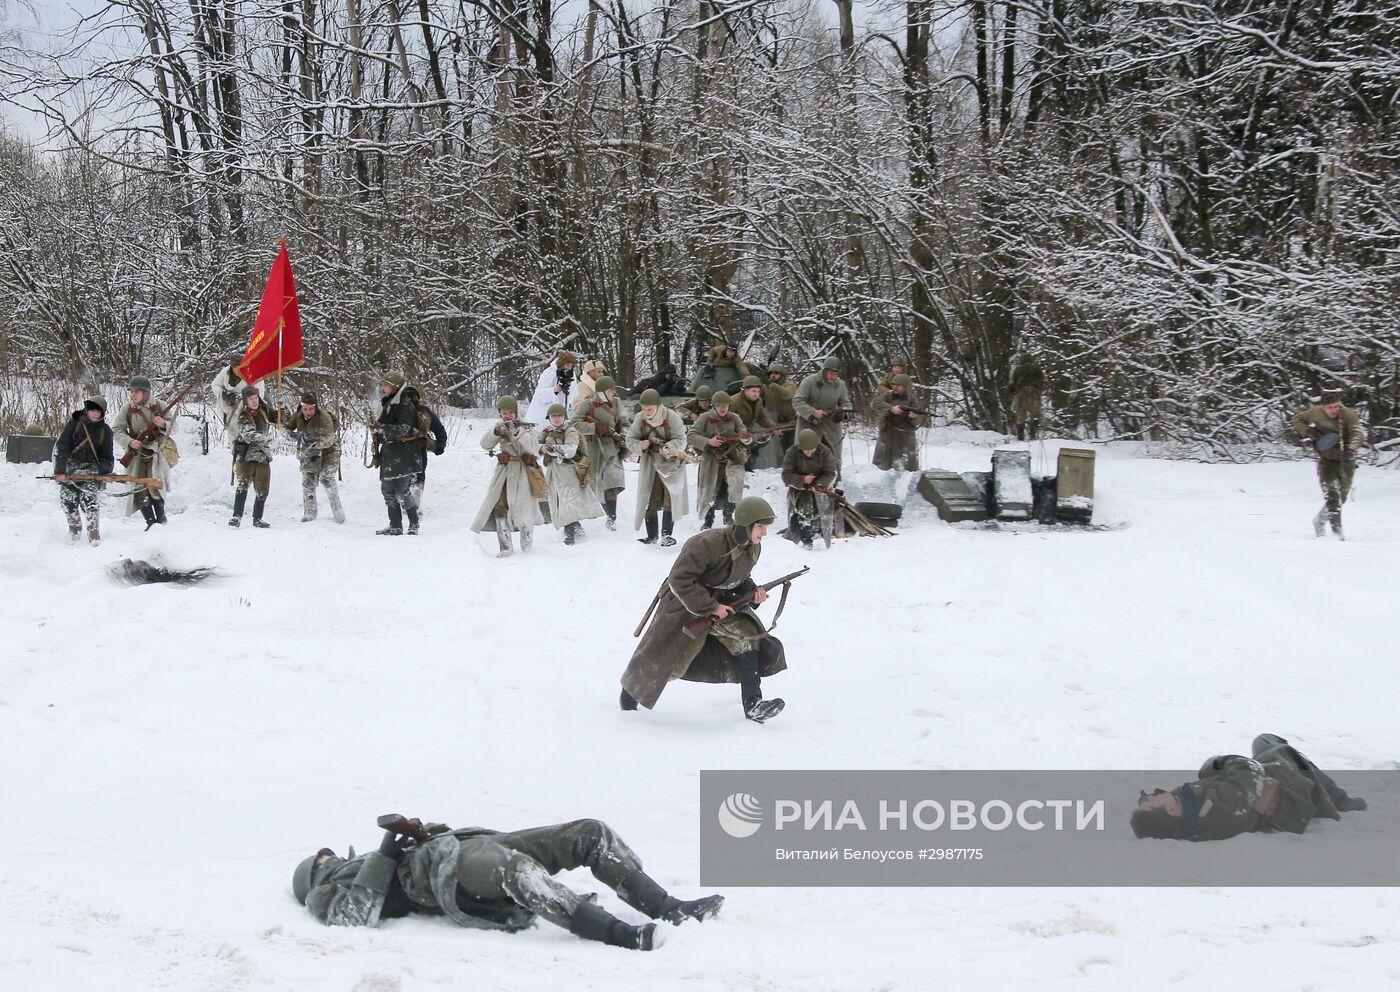 Военно-исторический фестиваль "Главный рубеж", посвященный 75-летию битвы под Москвой